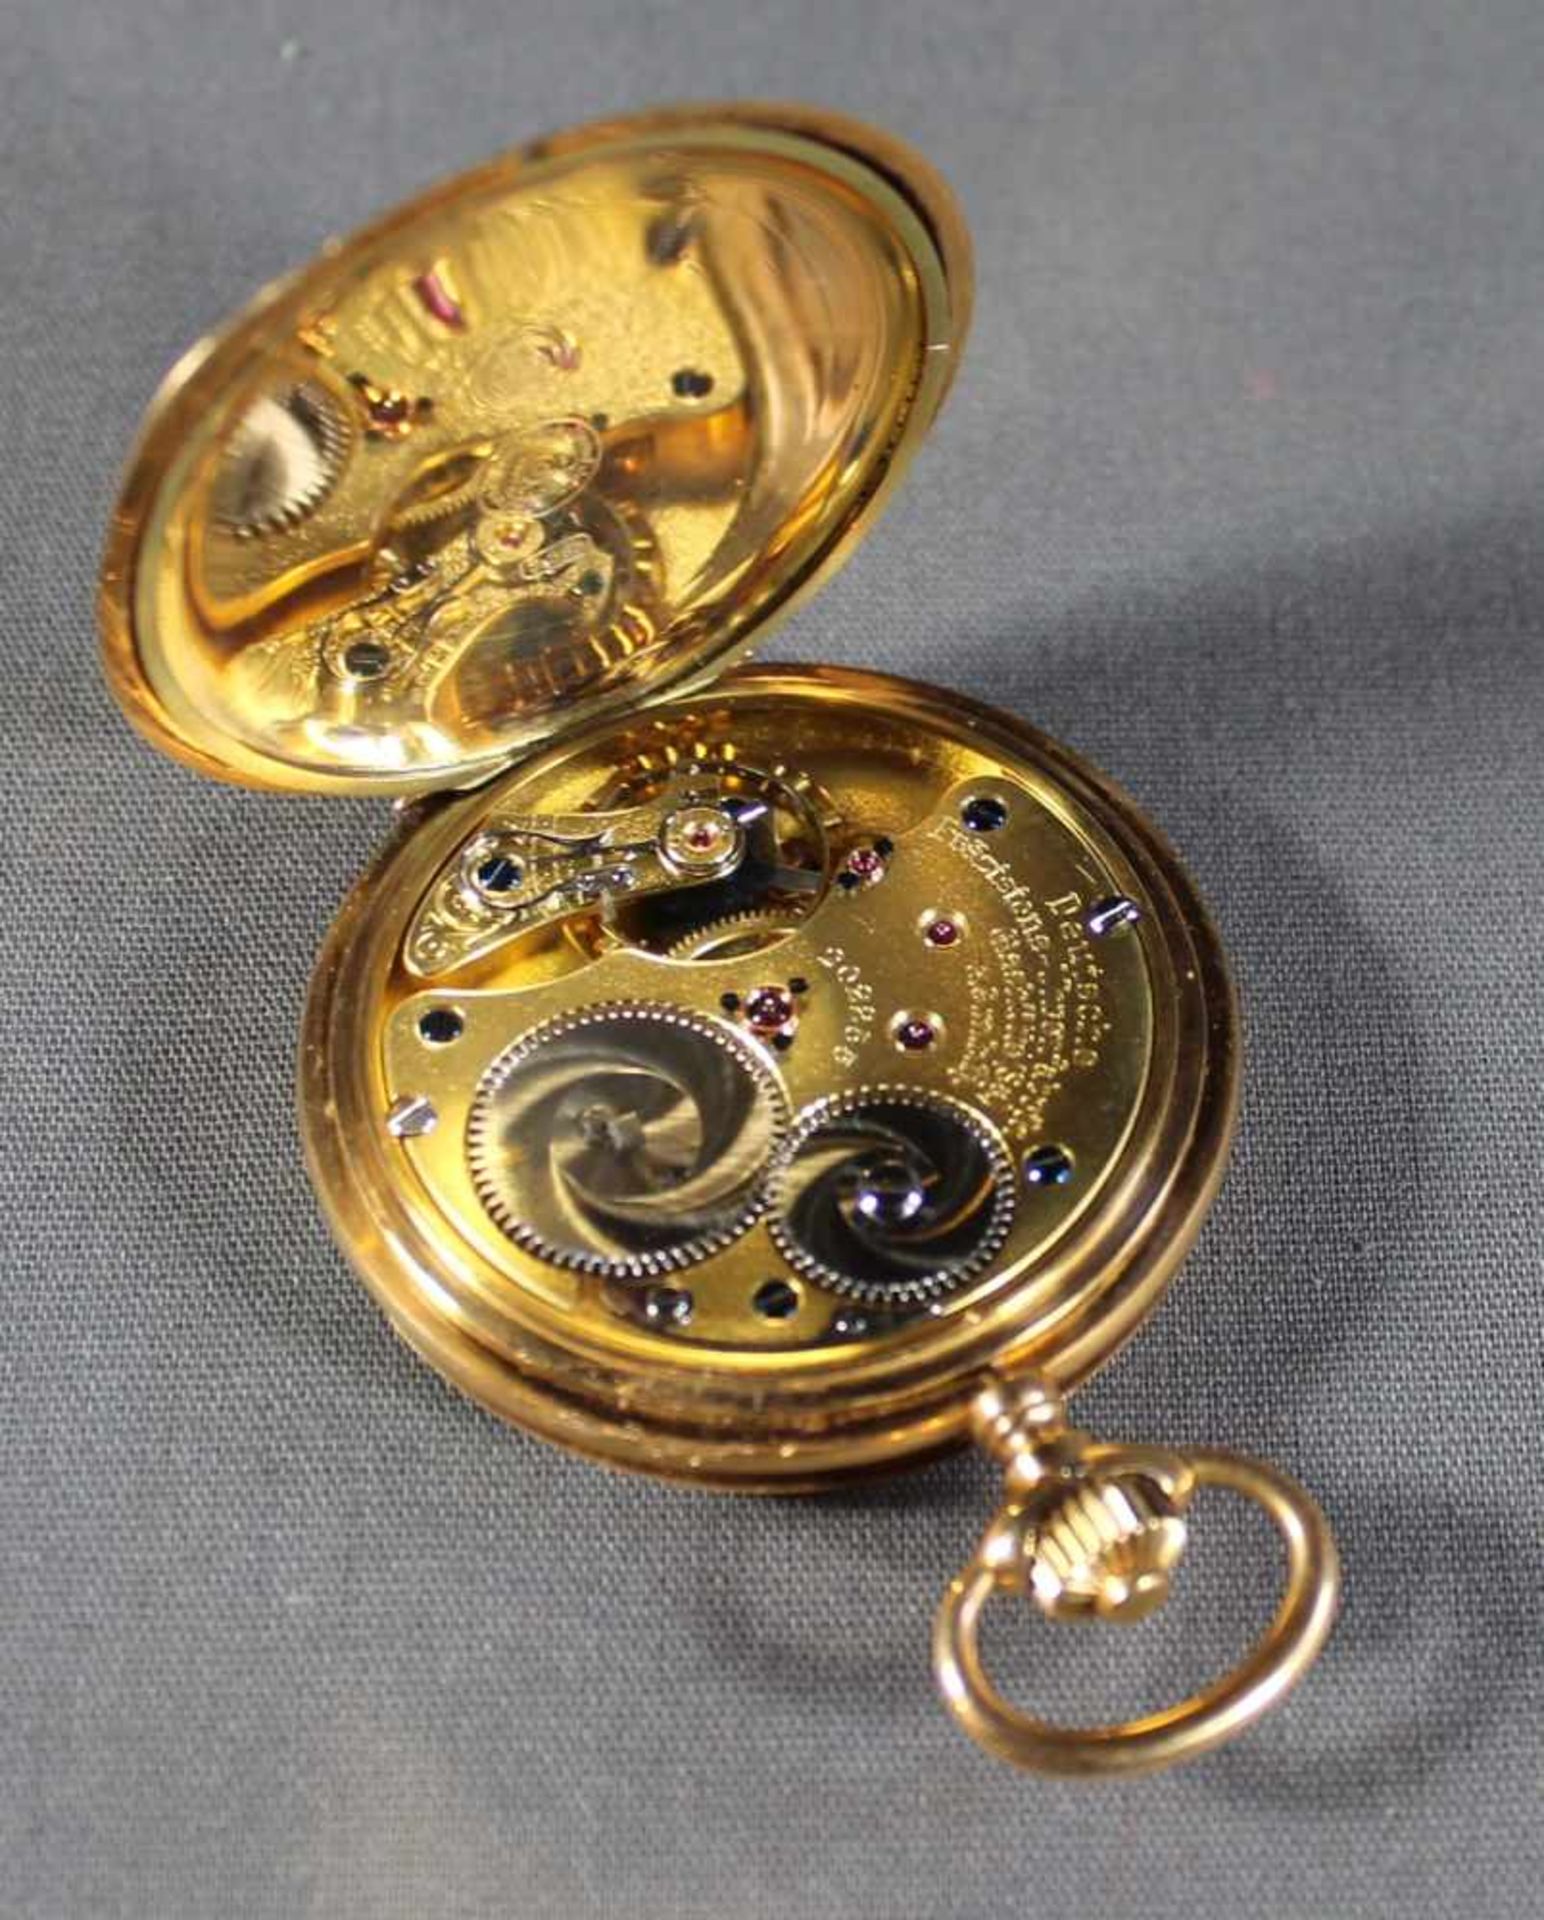 1 Sprungdeckeluhr 14kt.Gg (585/000) "Deutsche Präzisions-Uhrenfabrik Glashütte E.G.M.B.H.", - Bild 5 aus 5